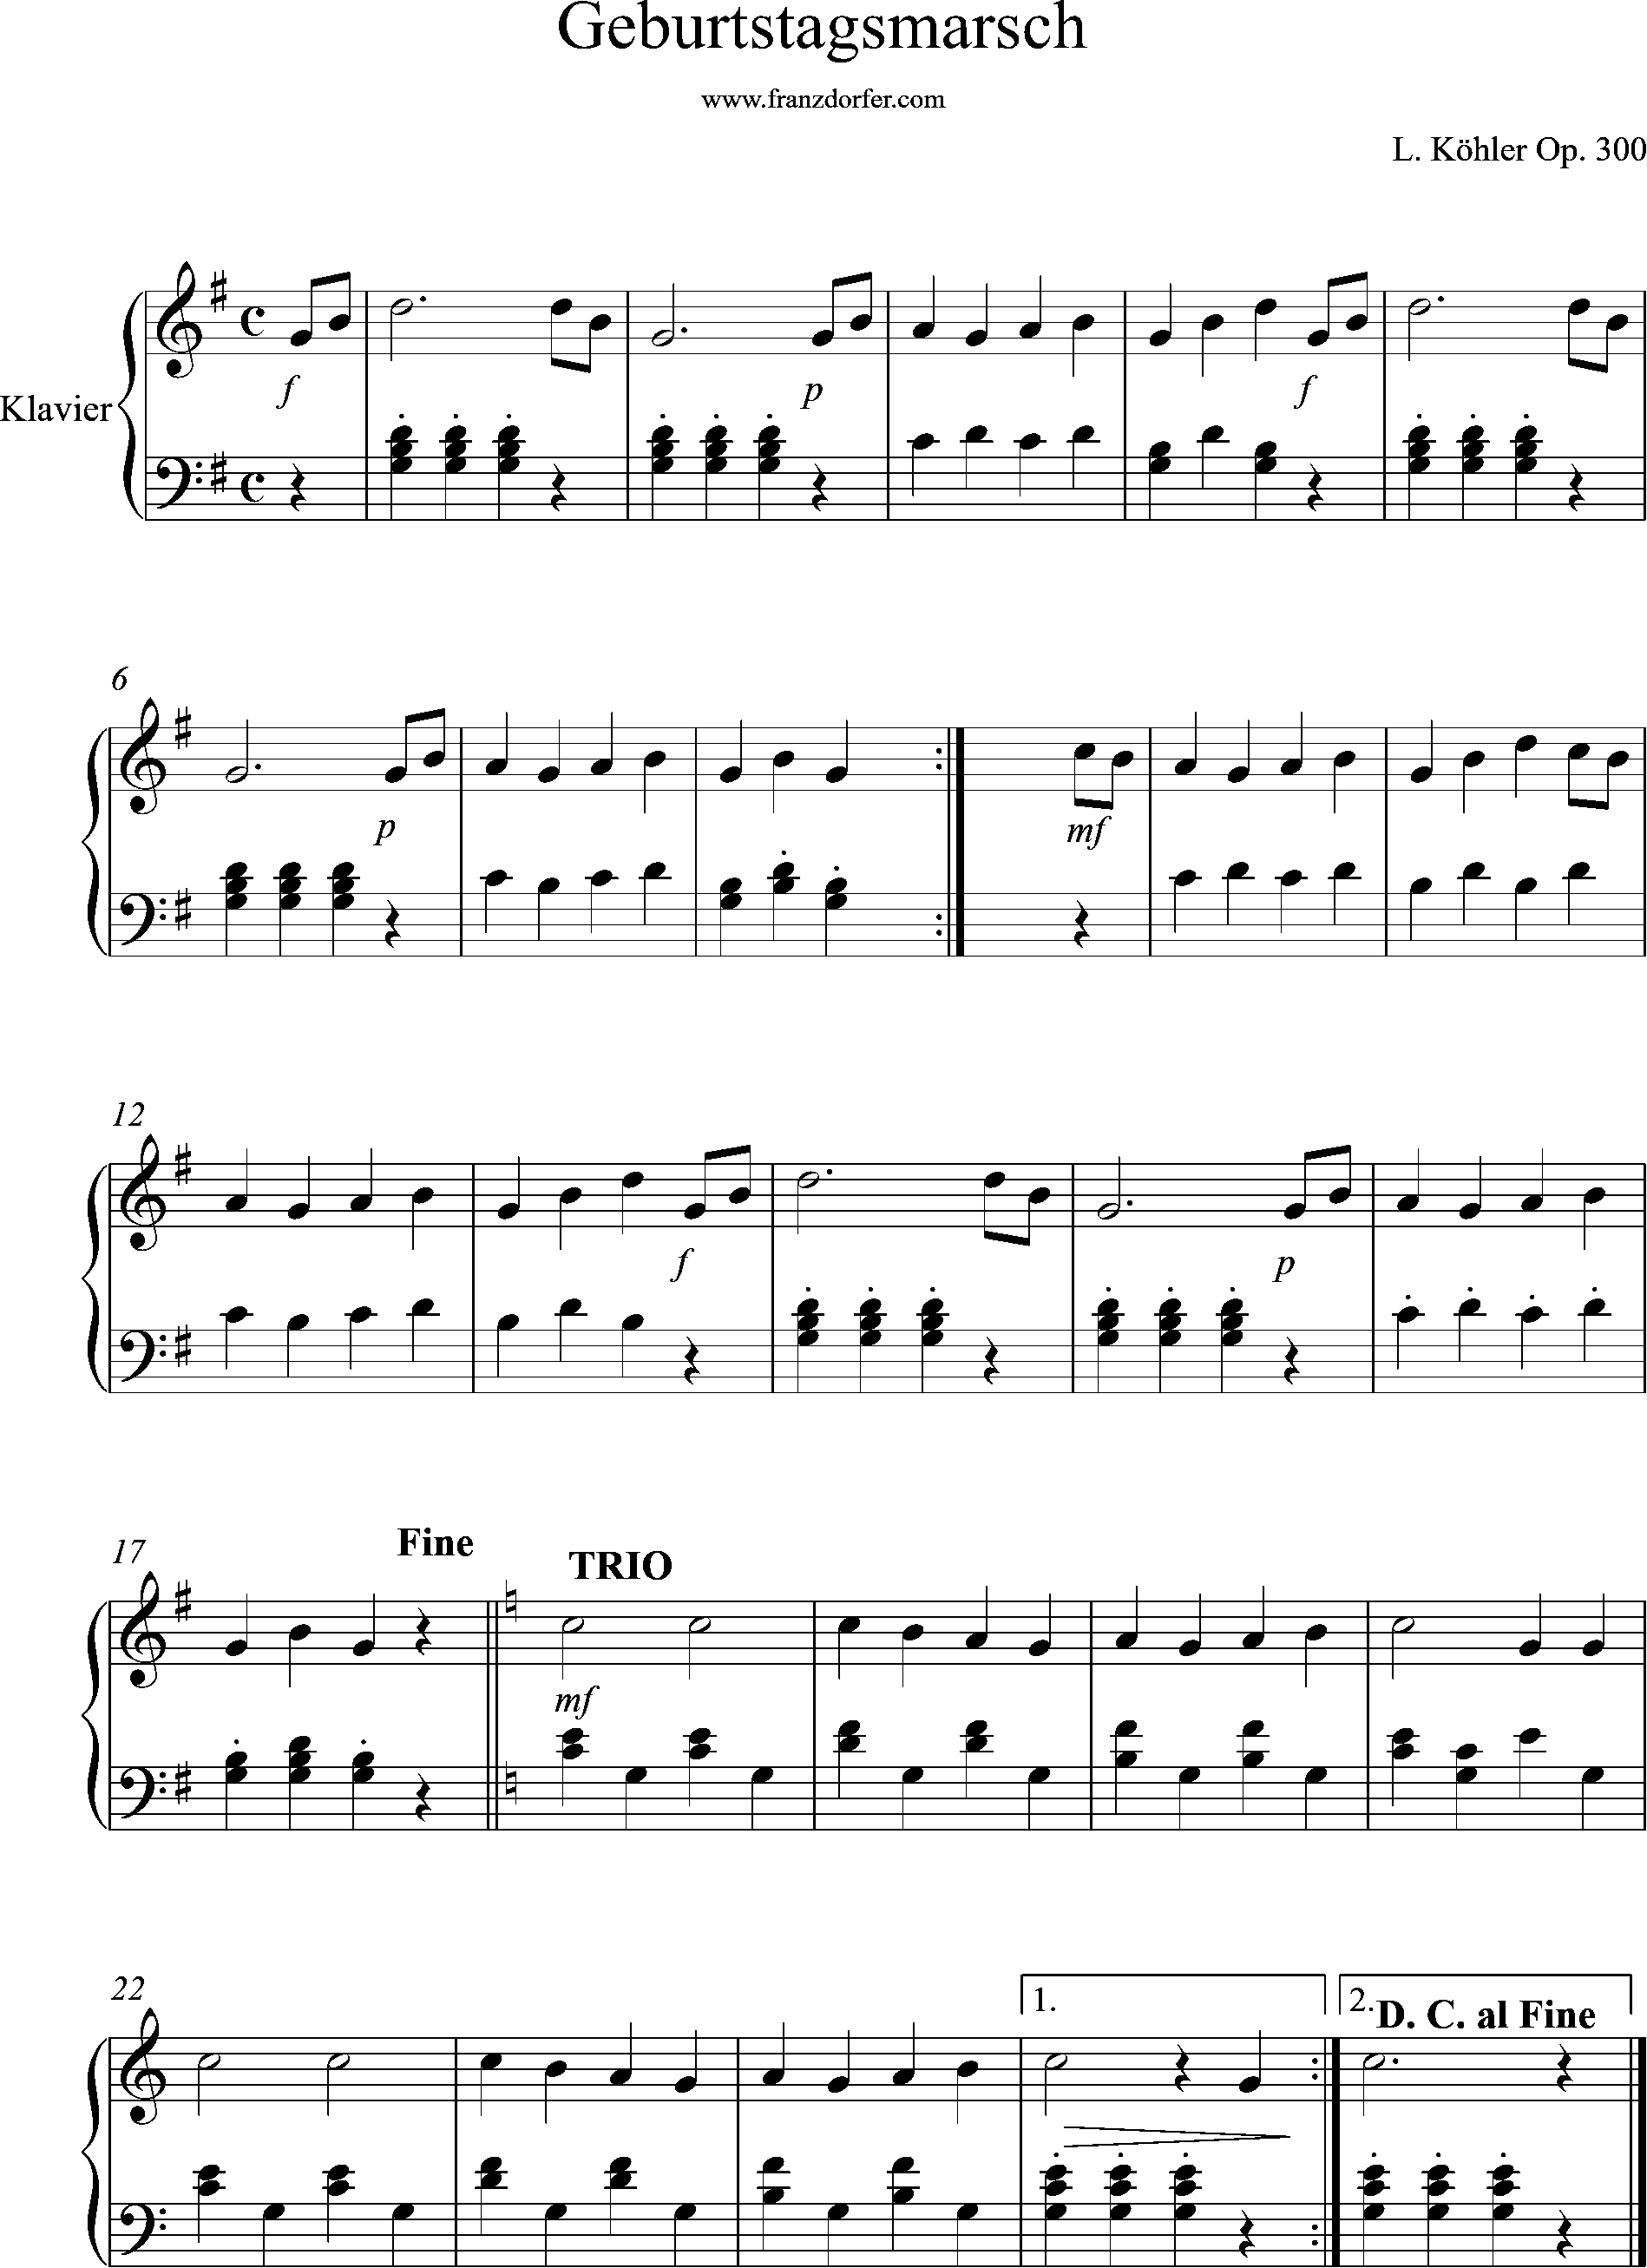 klaviernoten, Geburtstagsmarsch, Köhler, G-Dur